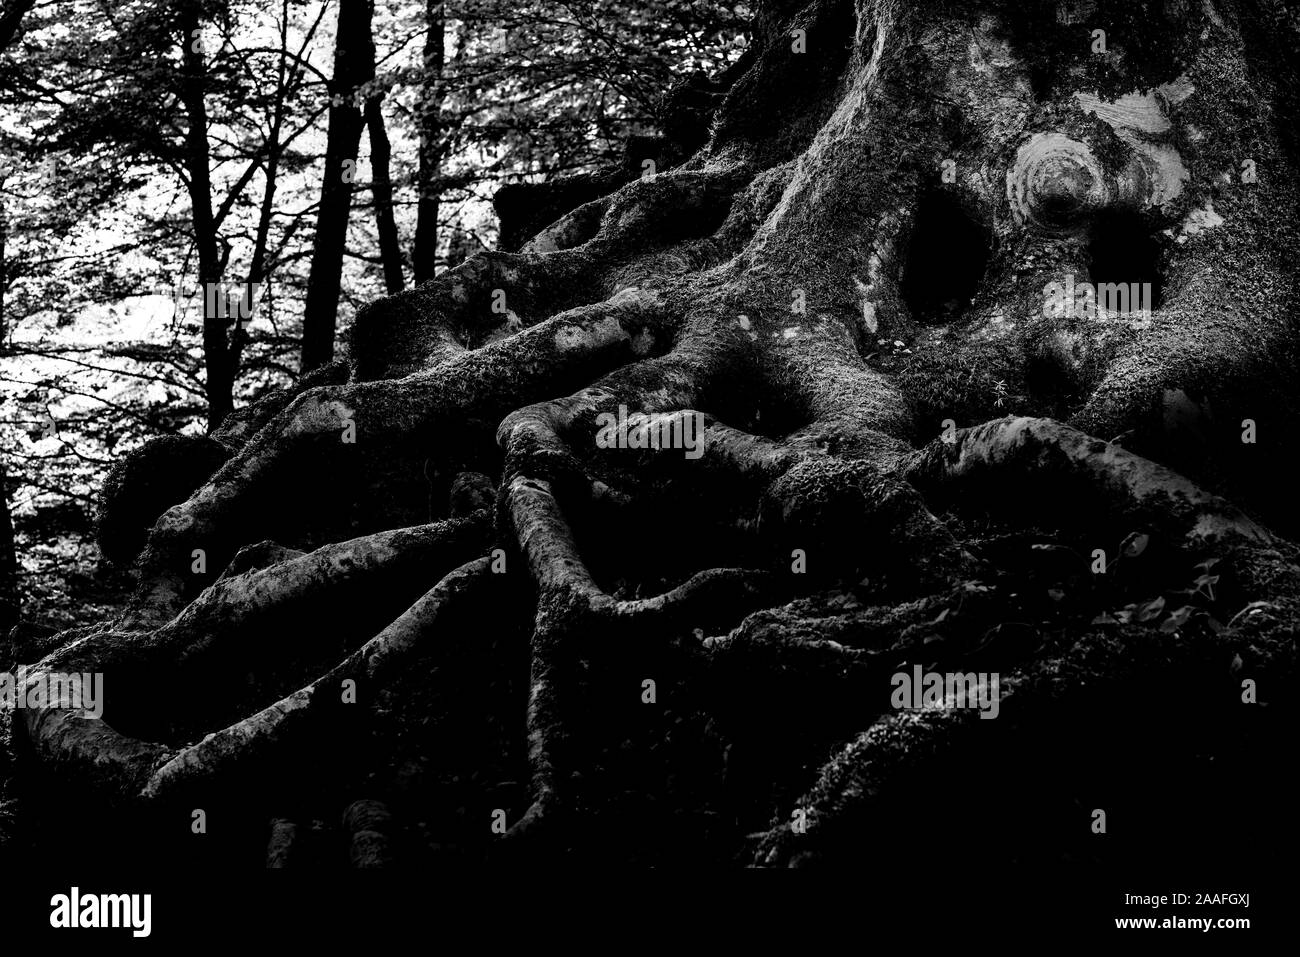 Albero magico con le radici avvolgenti in una foresta Foto Stock